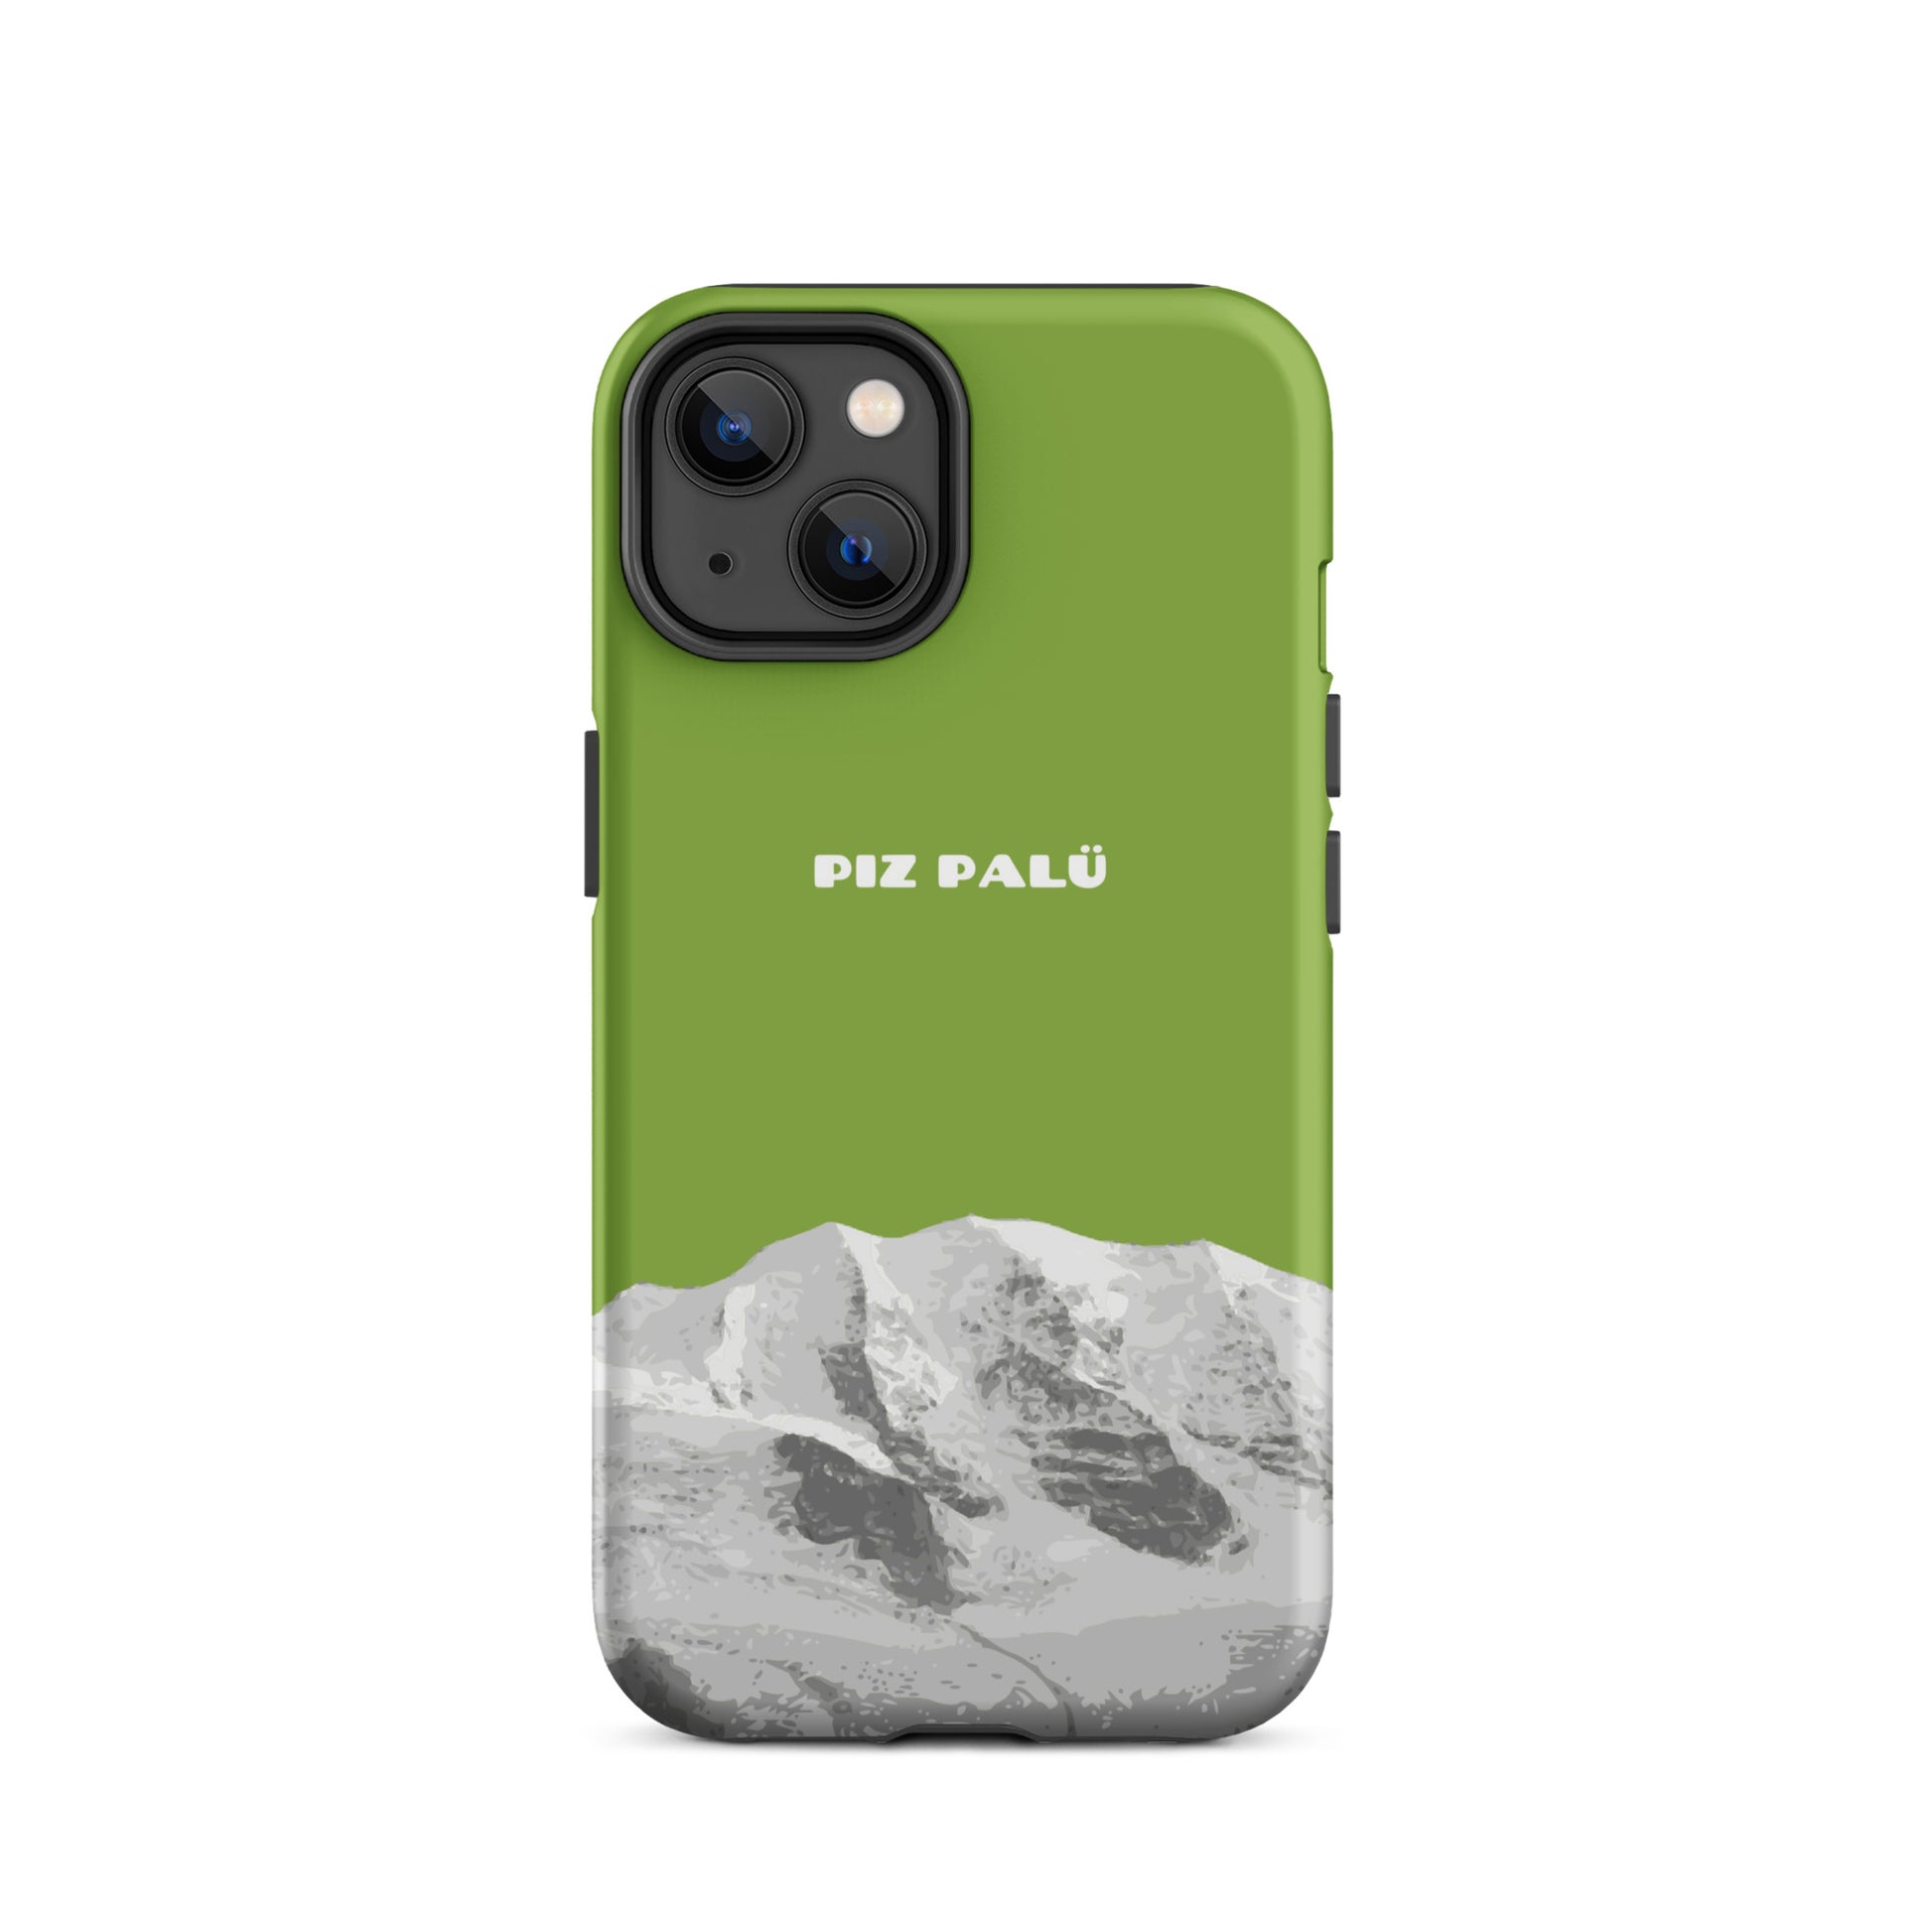 Hülle für das iPhone 14 von Apple in der Farbe Gelbgrün, dass den Piz Palü in Graubünden zeigt. 